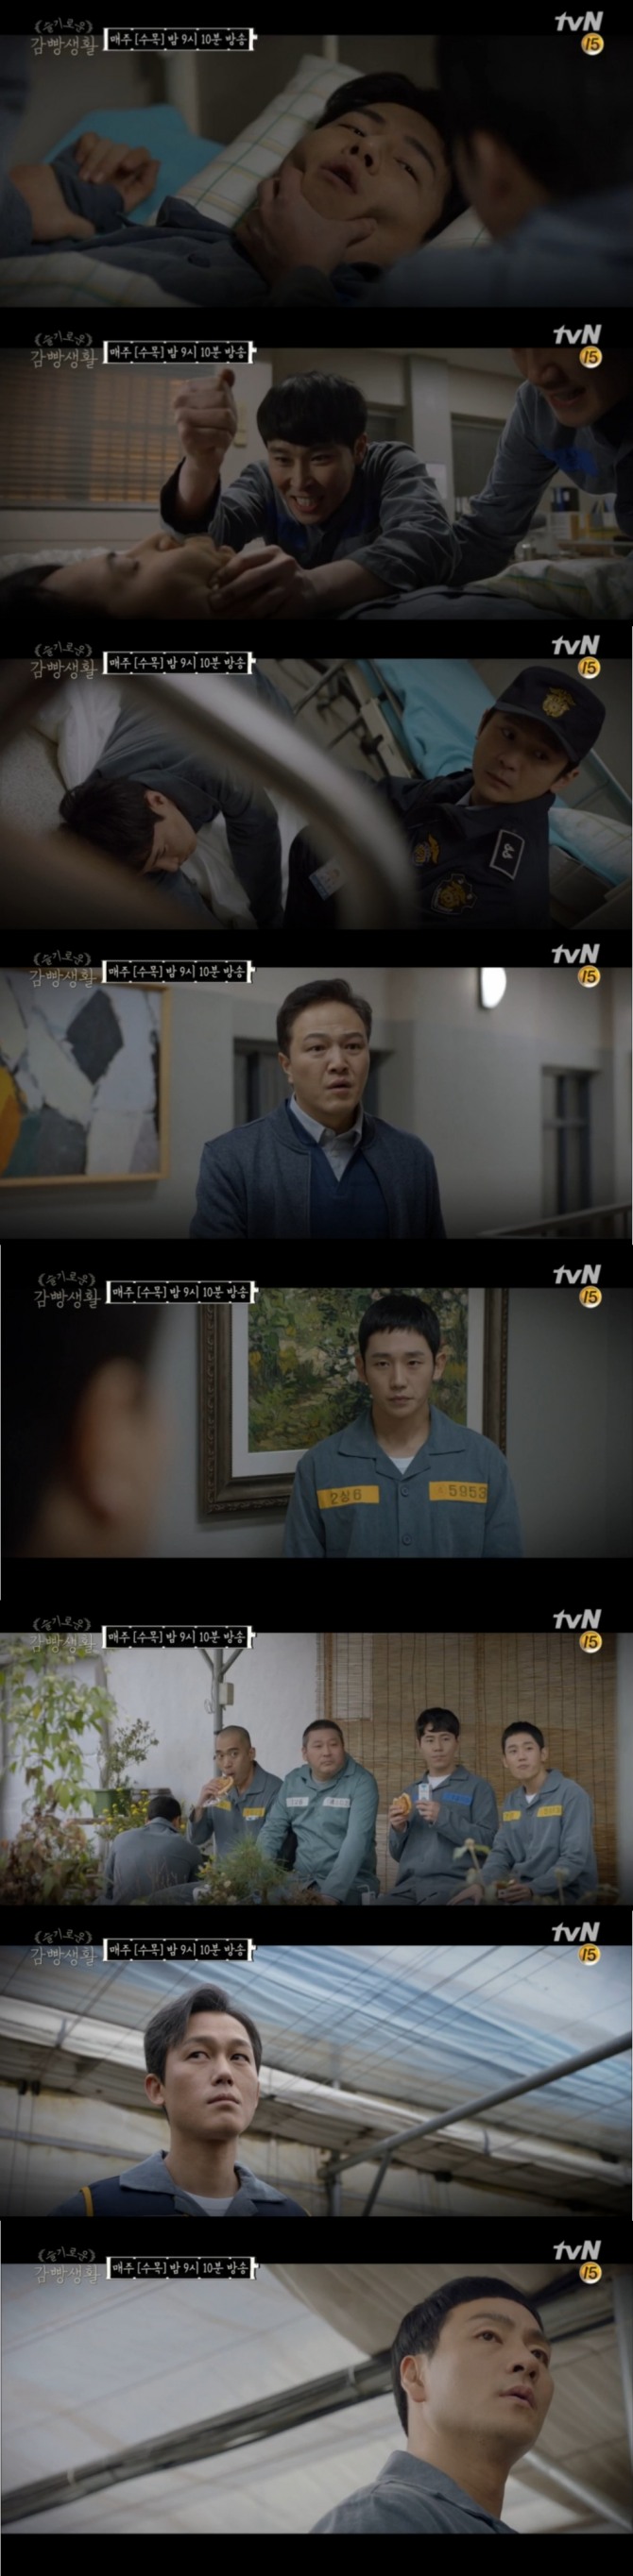 11일 밤 방송된 tvN 수목드라마 '슬기로운 감빵생활' 14회에서는 유대위(정해인)가 강제 약물 복용 위기에 처한 해롱이 유한양(이규형)을 구하는 극적인 잔번이 그려졌다. 사진=tvN 방송 캡처